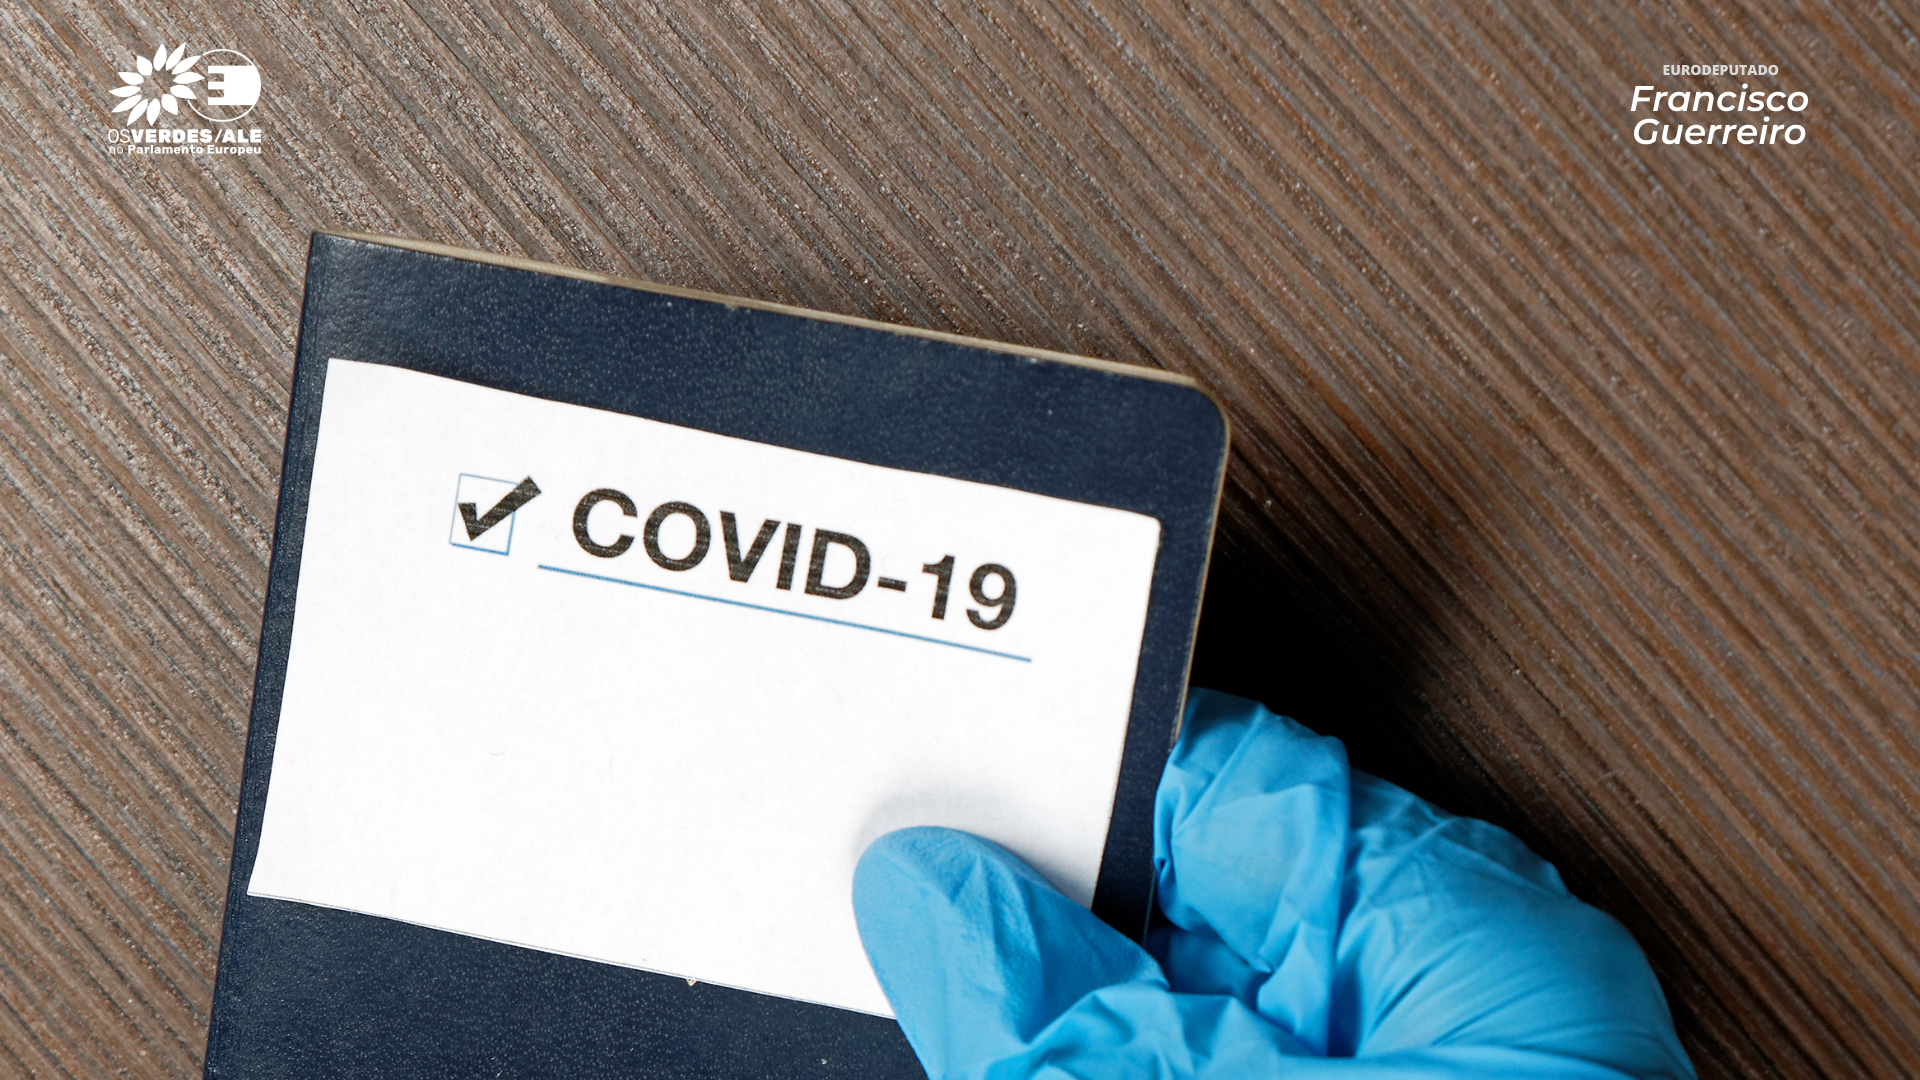 COVID-19: O certificado de vacinação não deve levar à discriminação